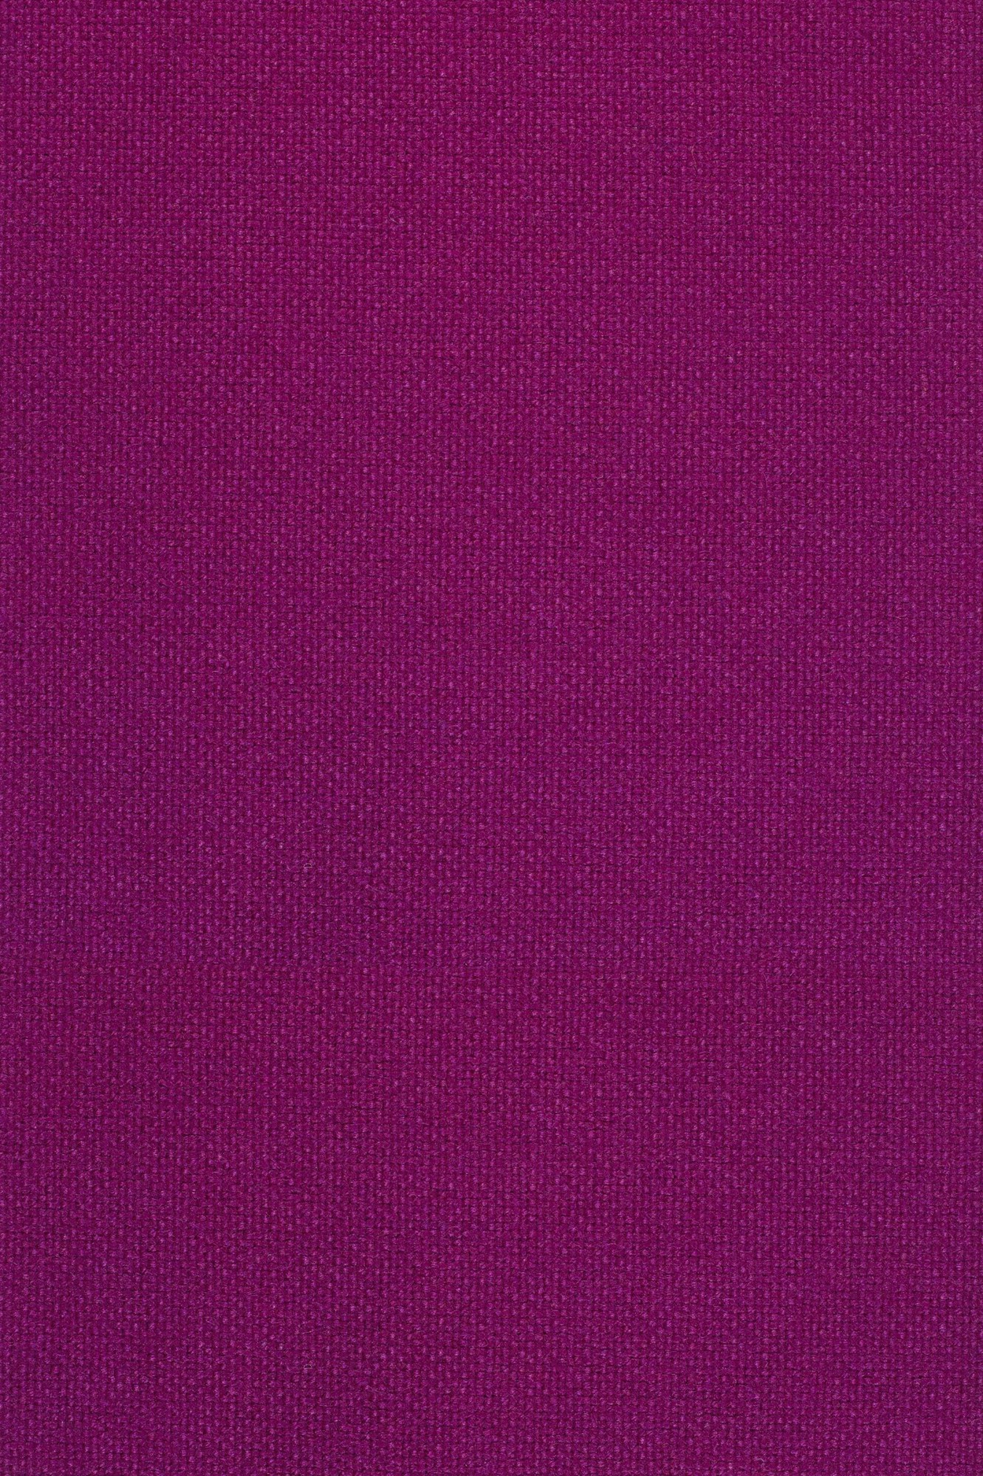 Fabric sample Hallingdal 65 563 purple